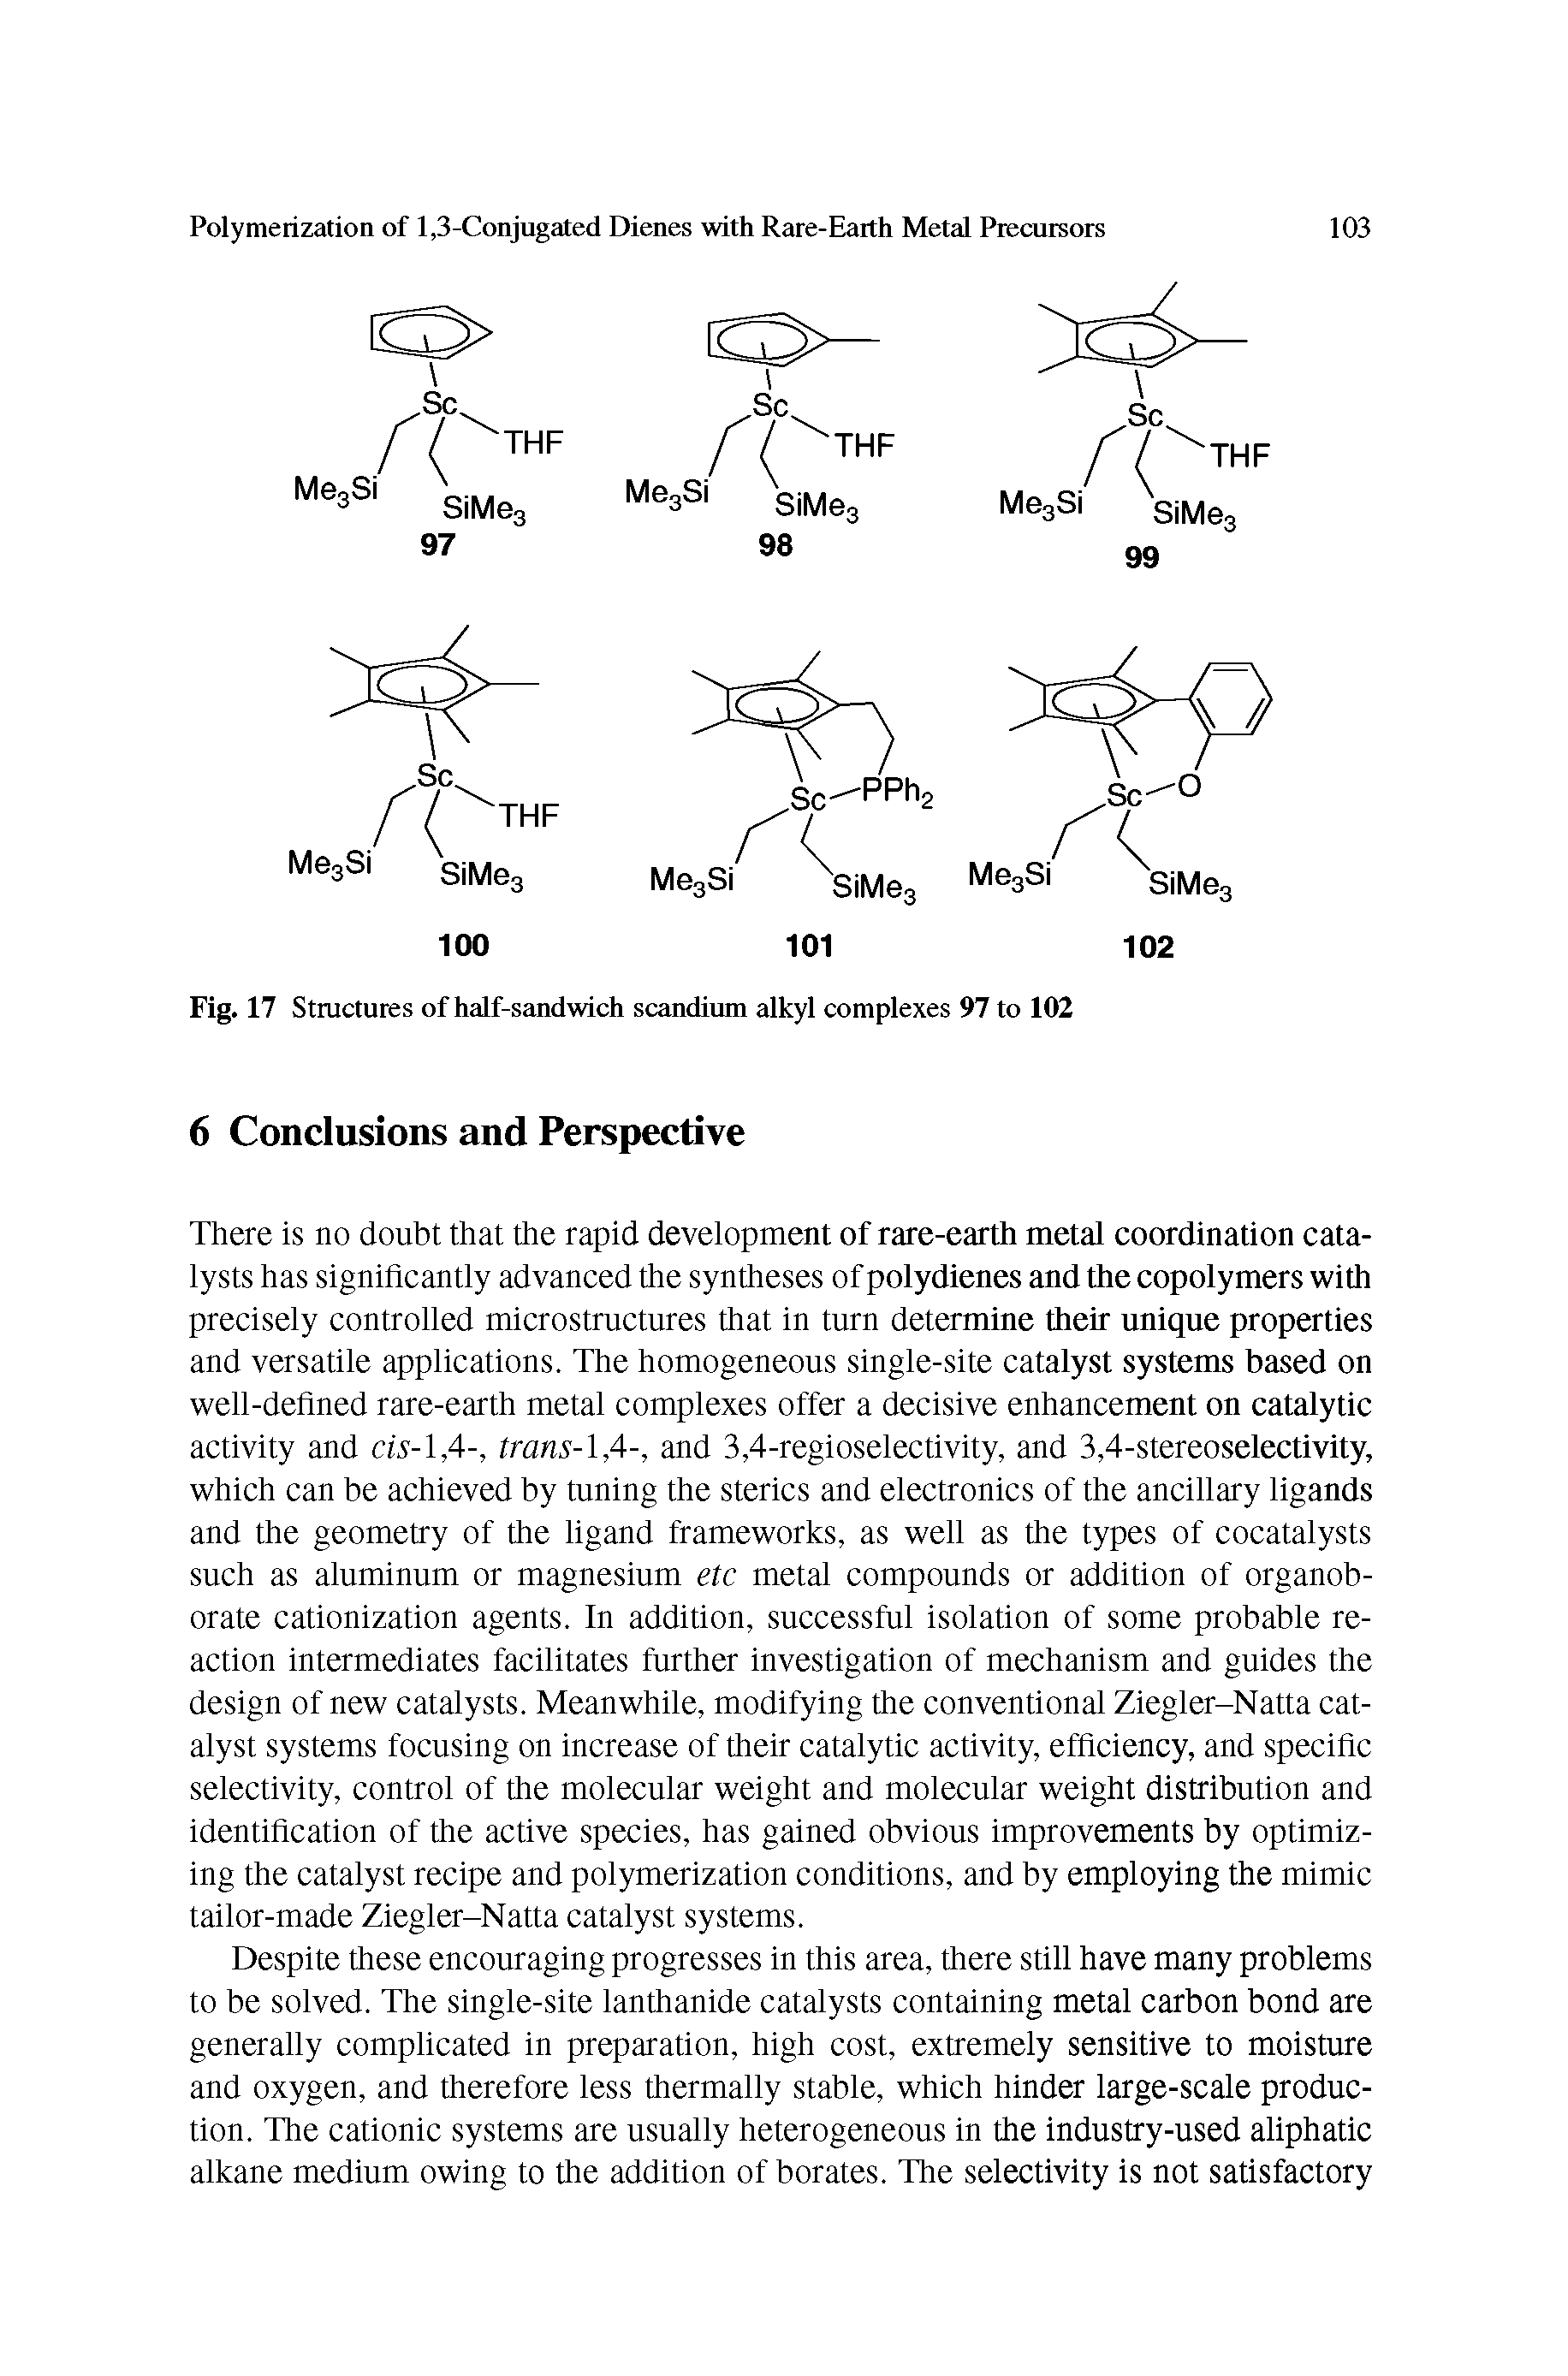 Fig. 17 Structures of half-sandwich scandium alkyl complexes 97 to 102...